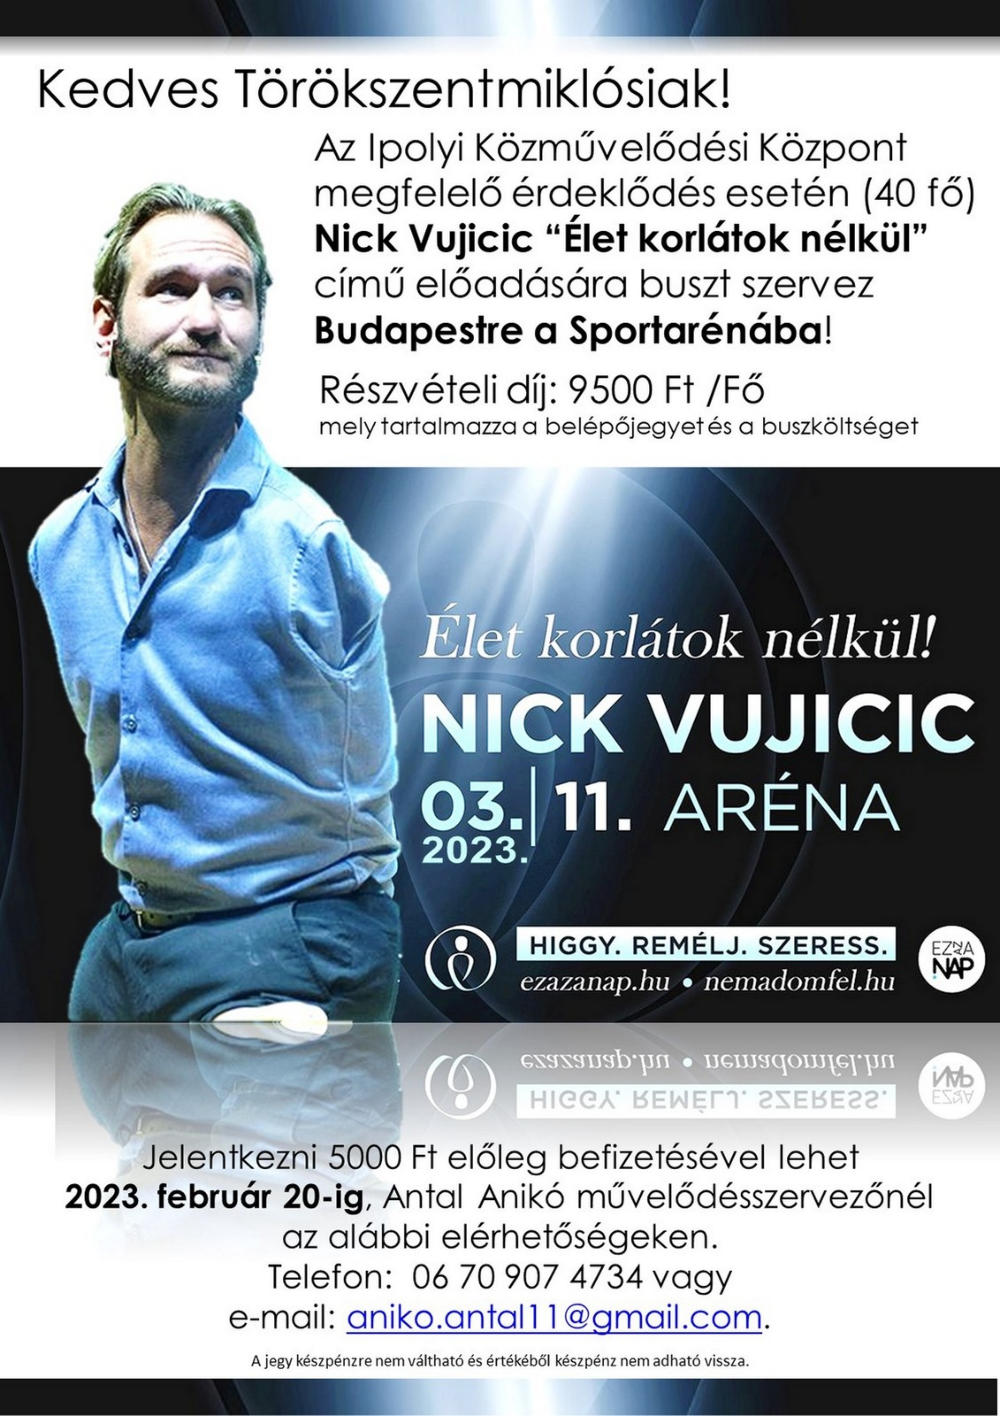 Az Ipolyi Közművelődési Központ Nick Vujicic „Élet korlátok nélkül” című előadására buszt szervez